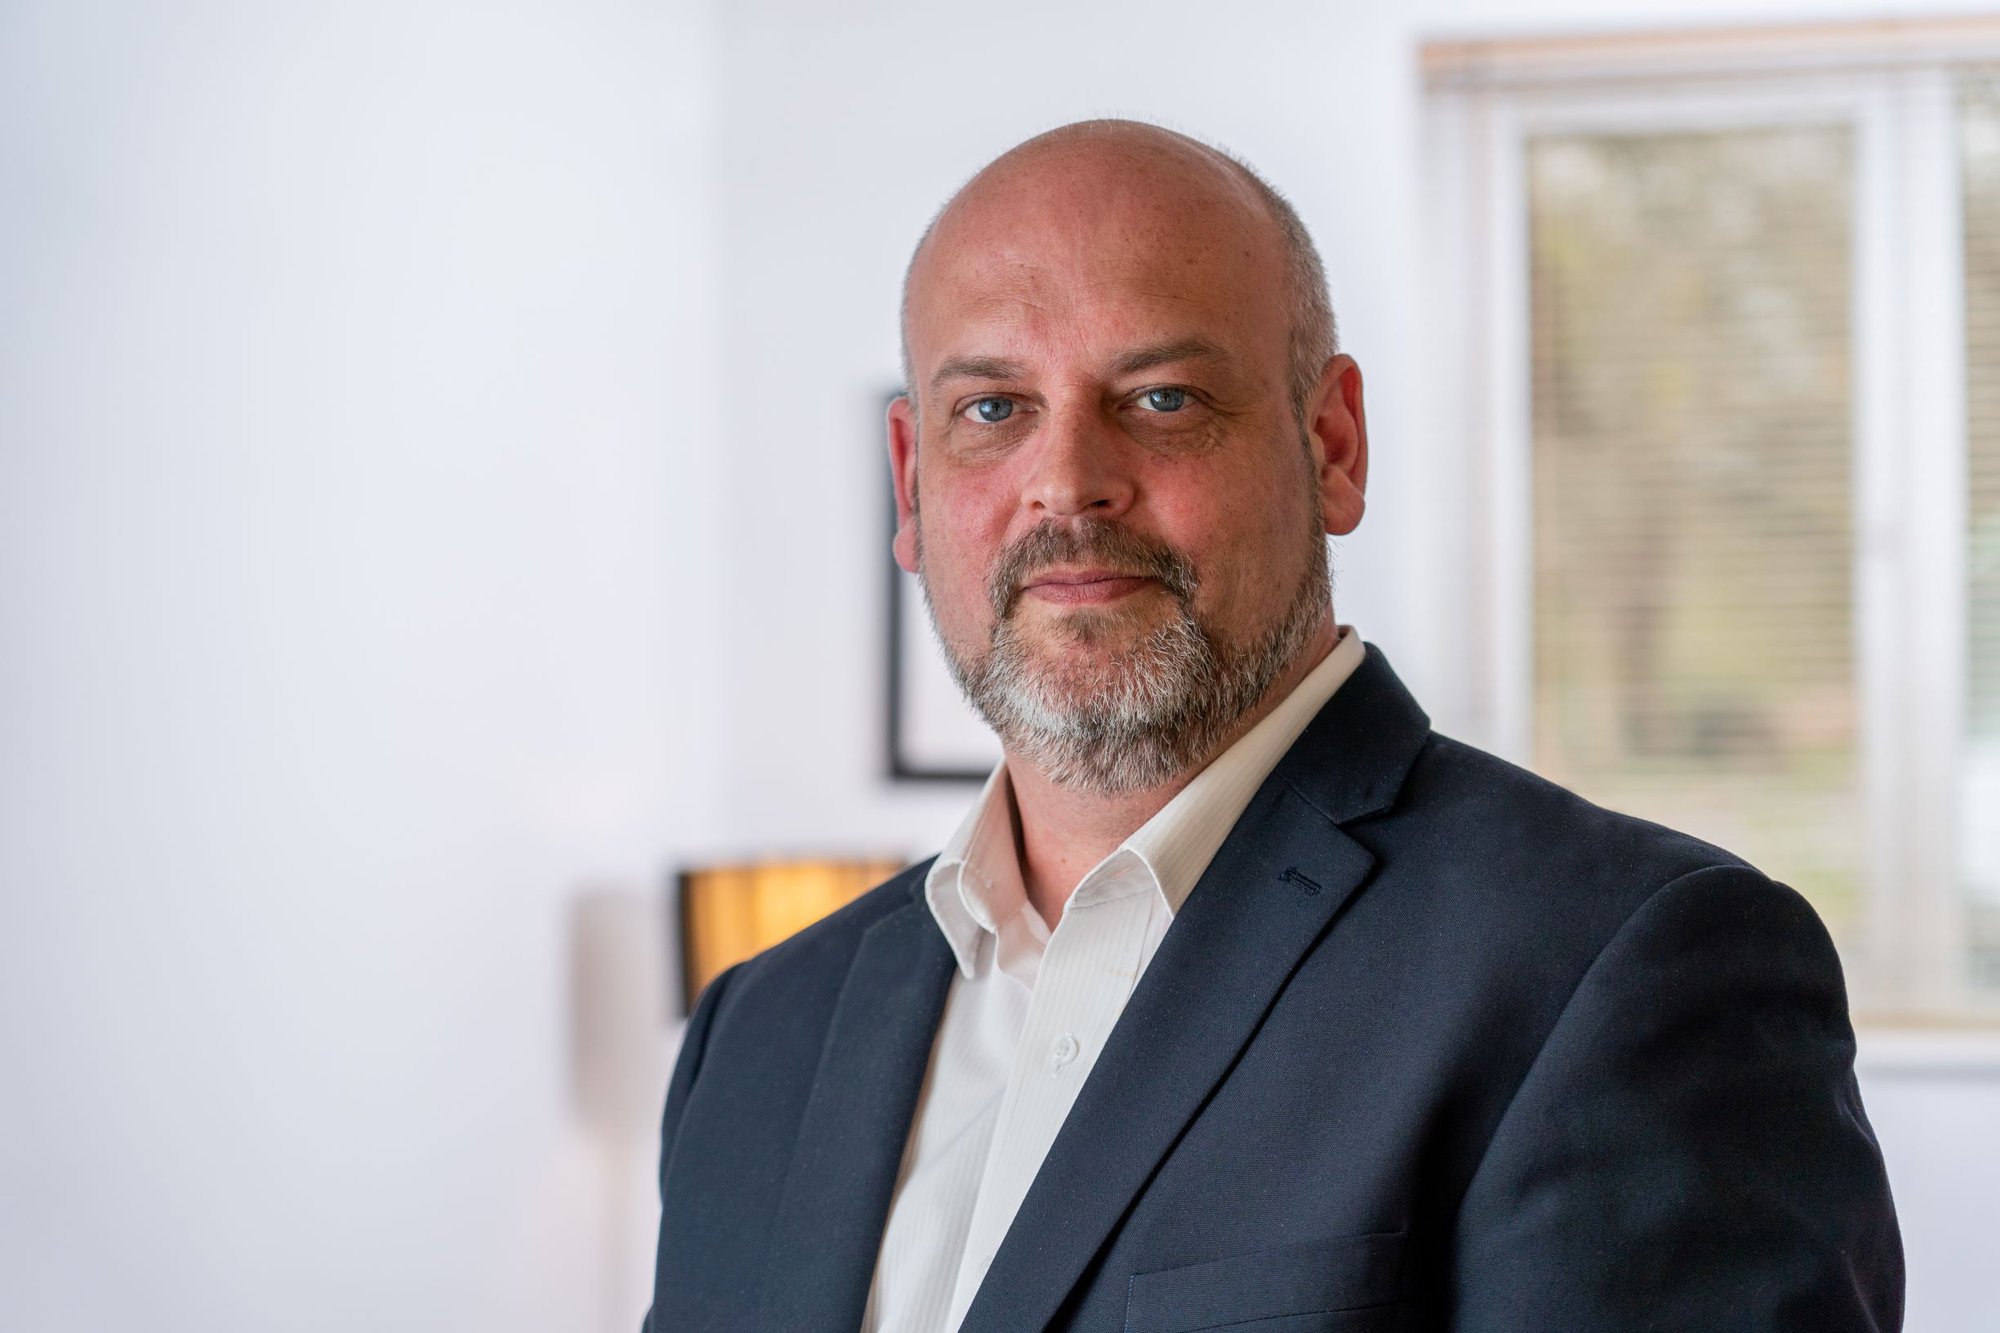 Matt Azzopardi rejoint Worldsensing en tant que Directeur régional des ventes pour l'Europe.